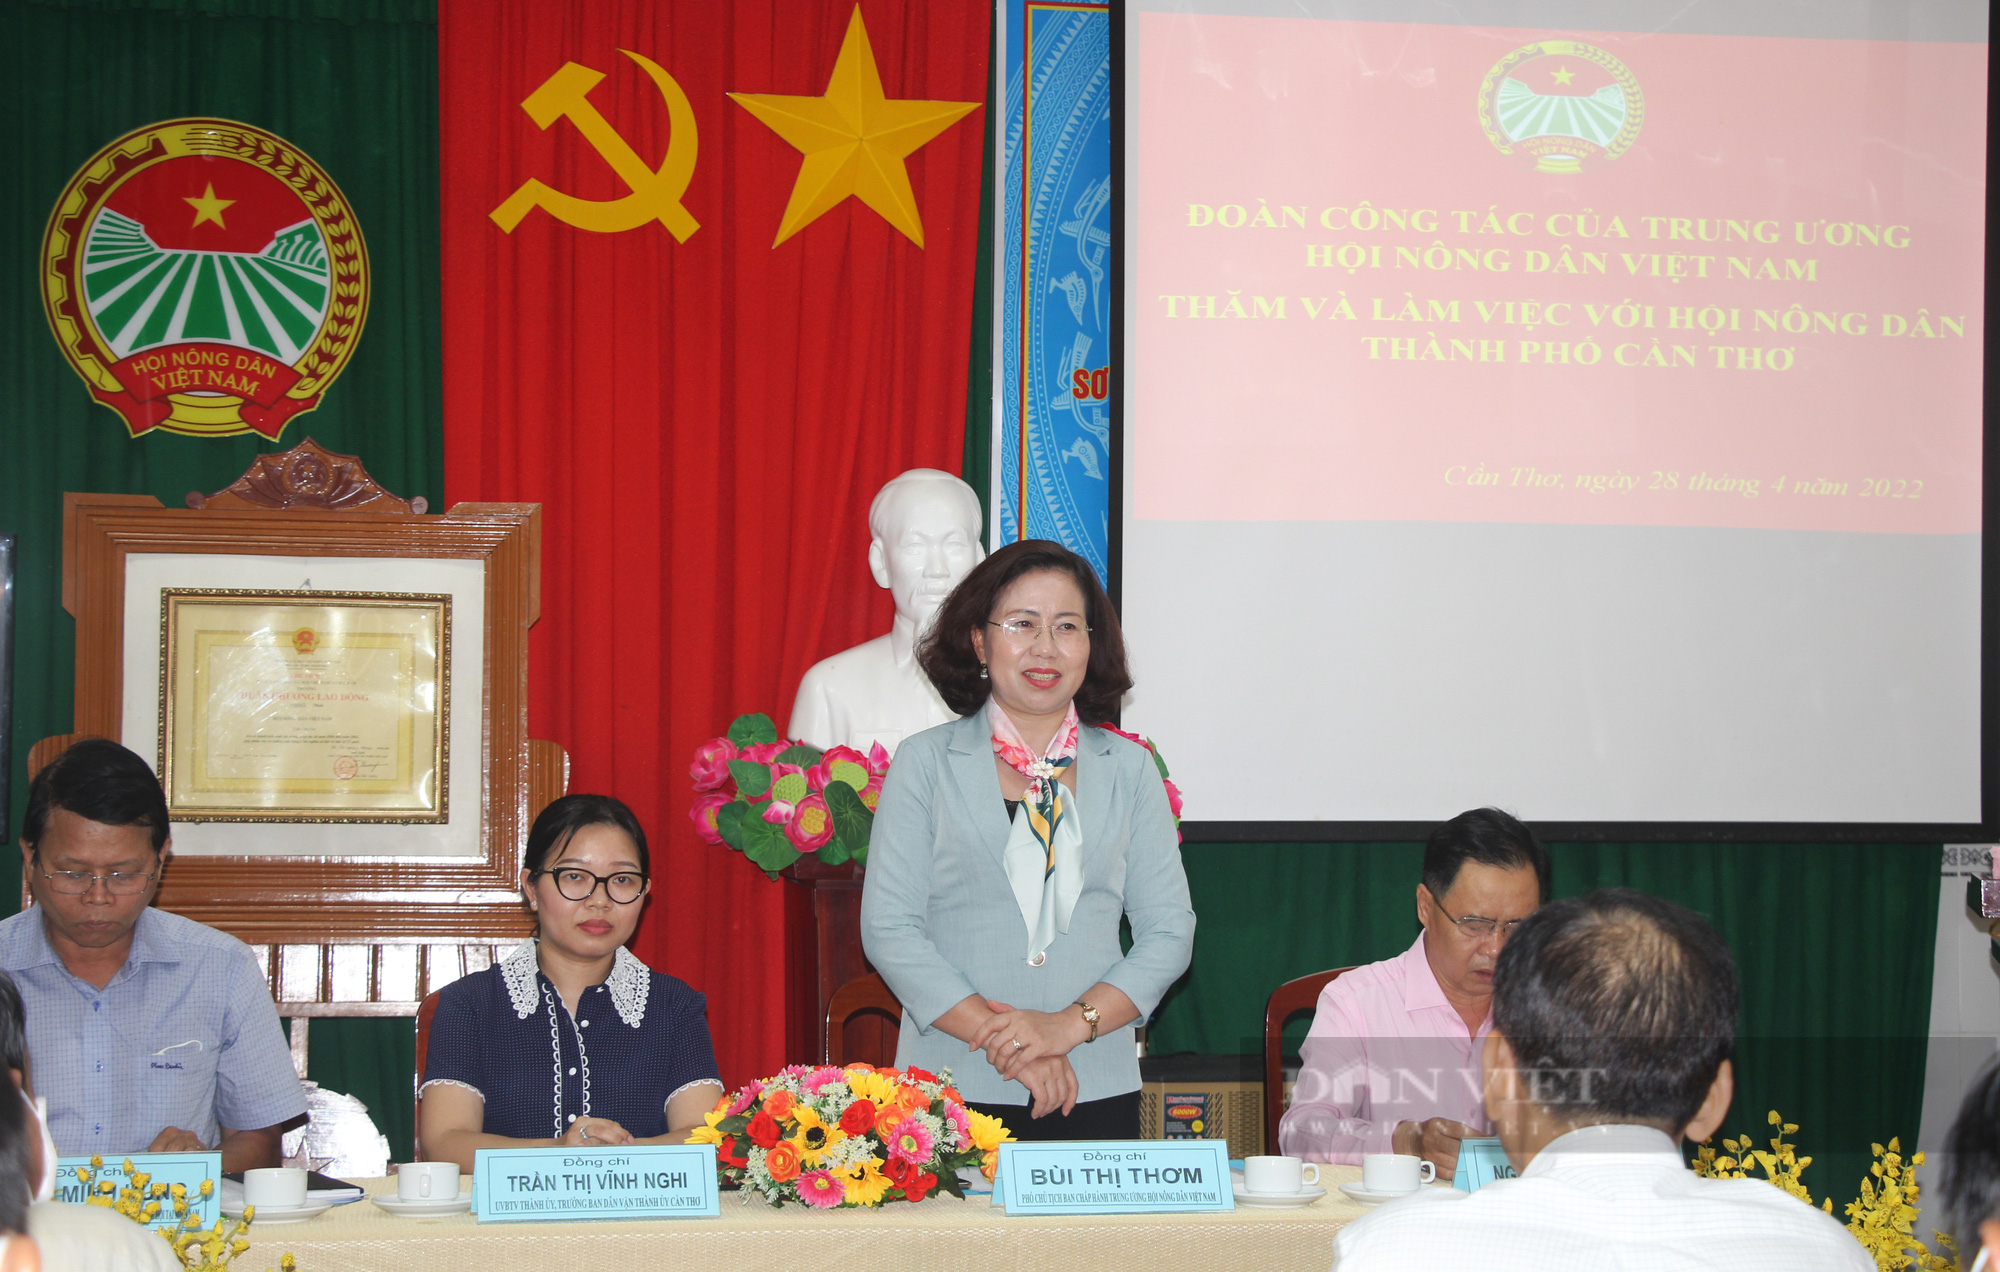 Phó Chủ tịch Hội NDVN Bùi Thị Thơm: Hội ND Cần Thơ giúp nông dân liên kết sản xuất, giảm chi phí đầu vào- Ảnh 1.